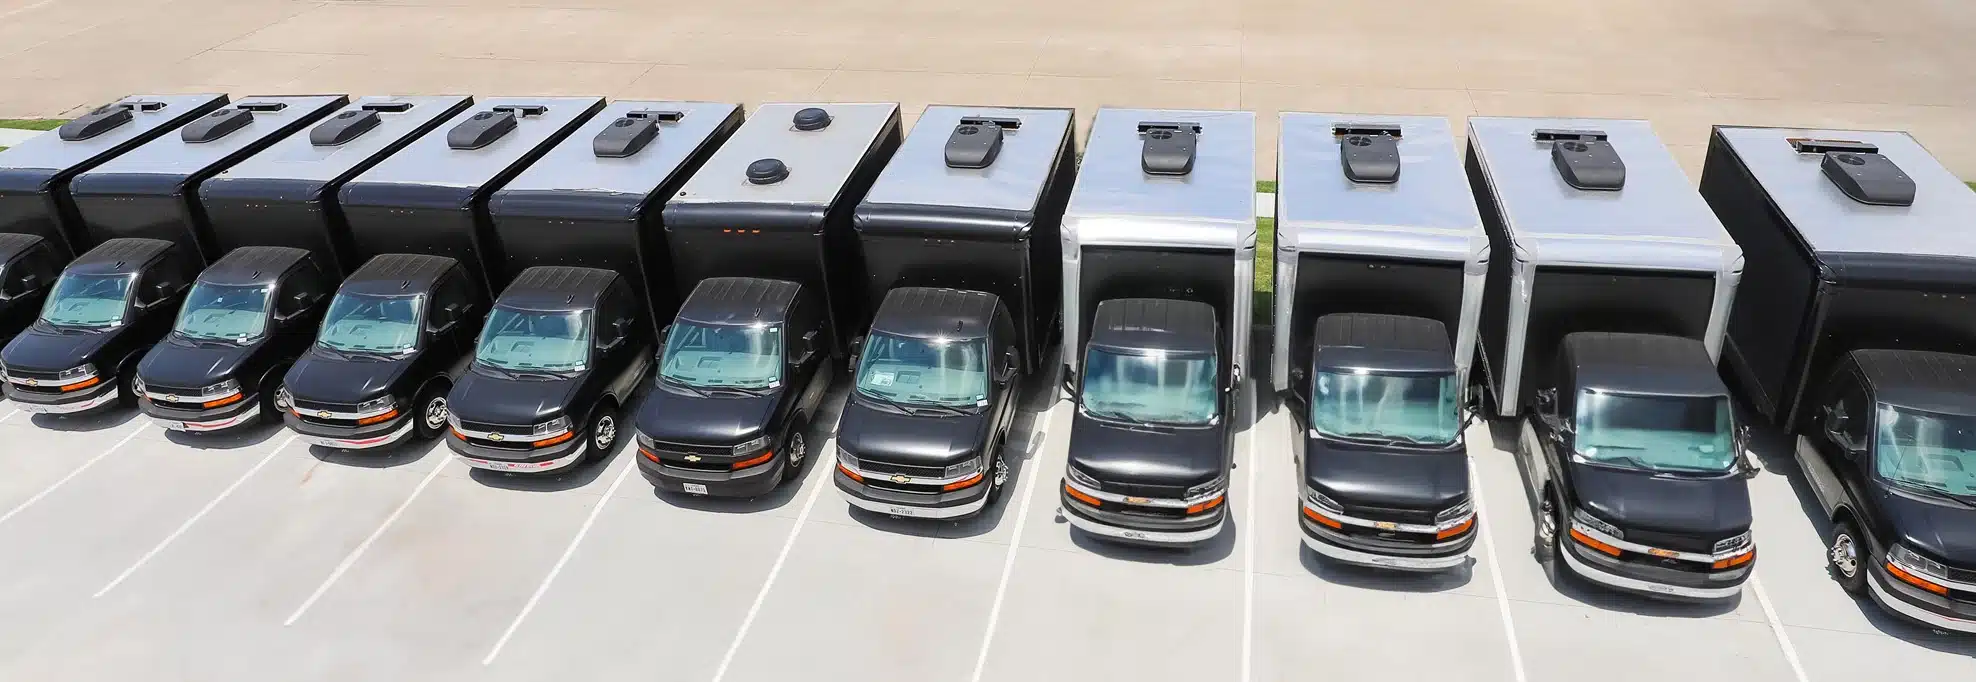 mobile-billboard-truck-fleet-digital-led-trucks-billboard-express (1)